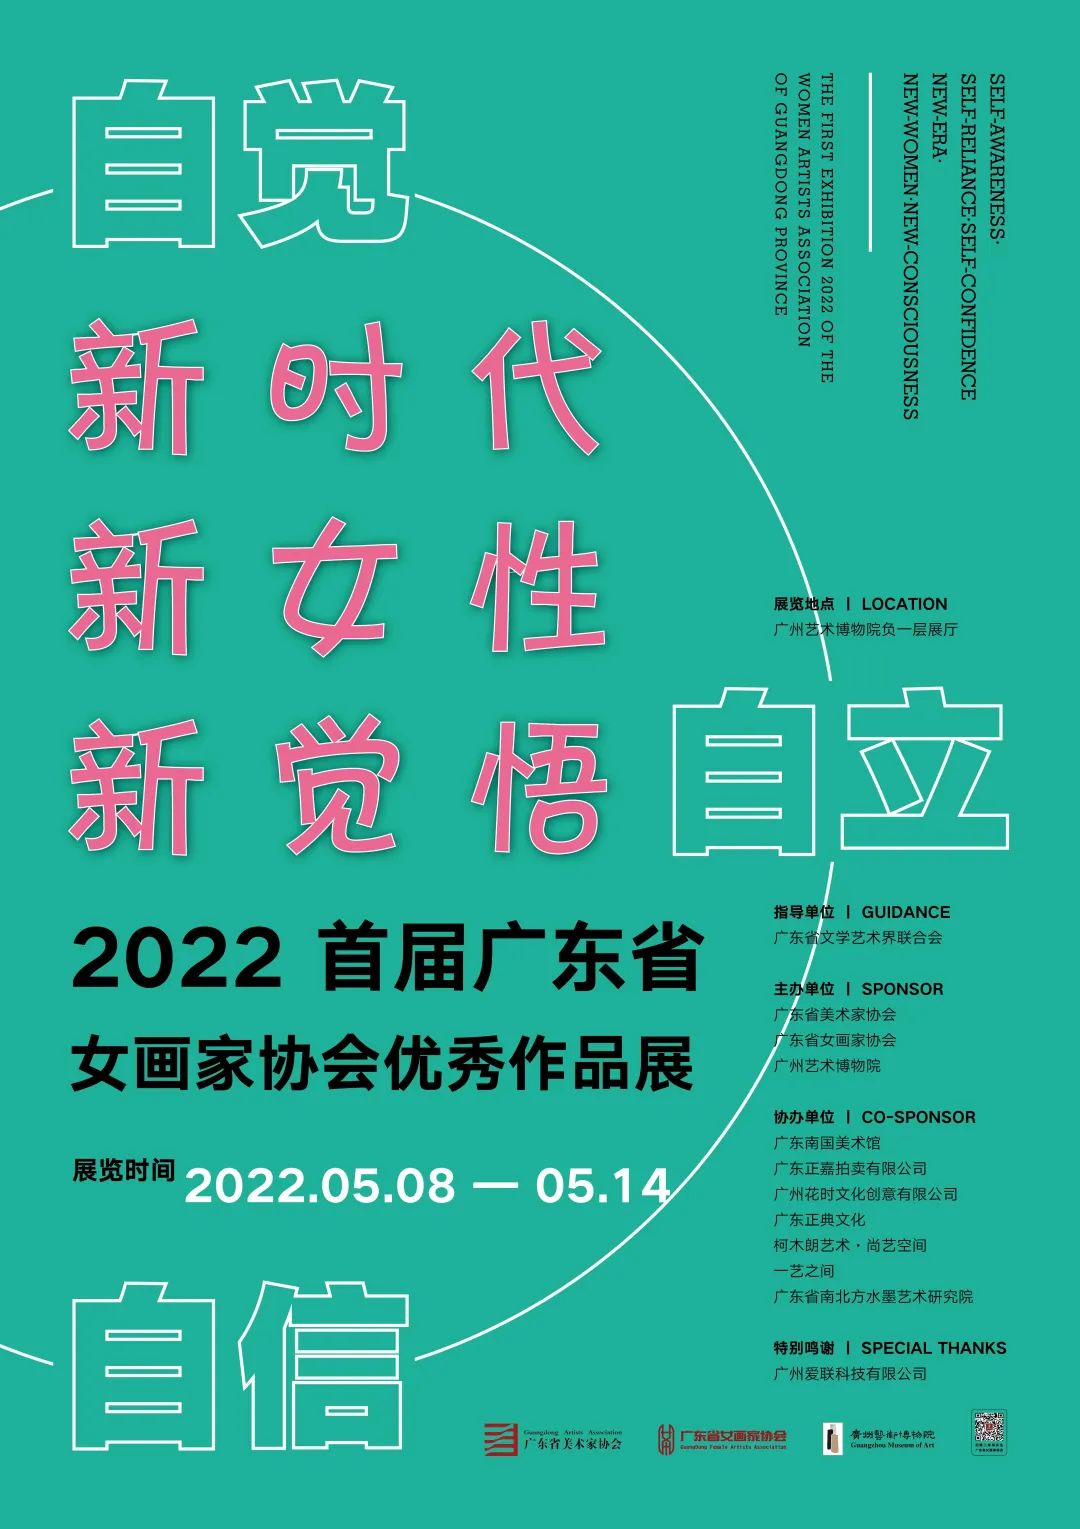 新时代、新女性、新觉悟—— 2022 首届广东省女画家协会优秀作品展